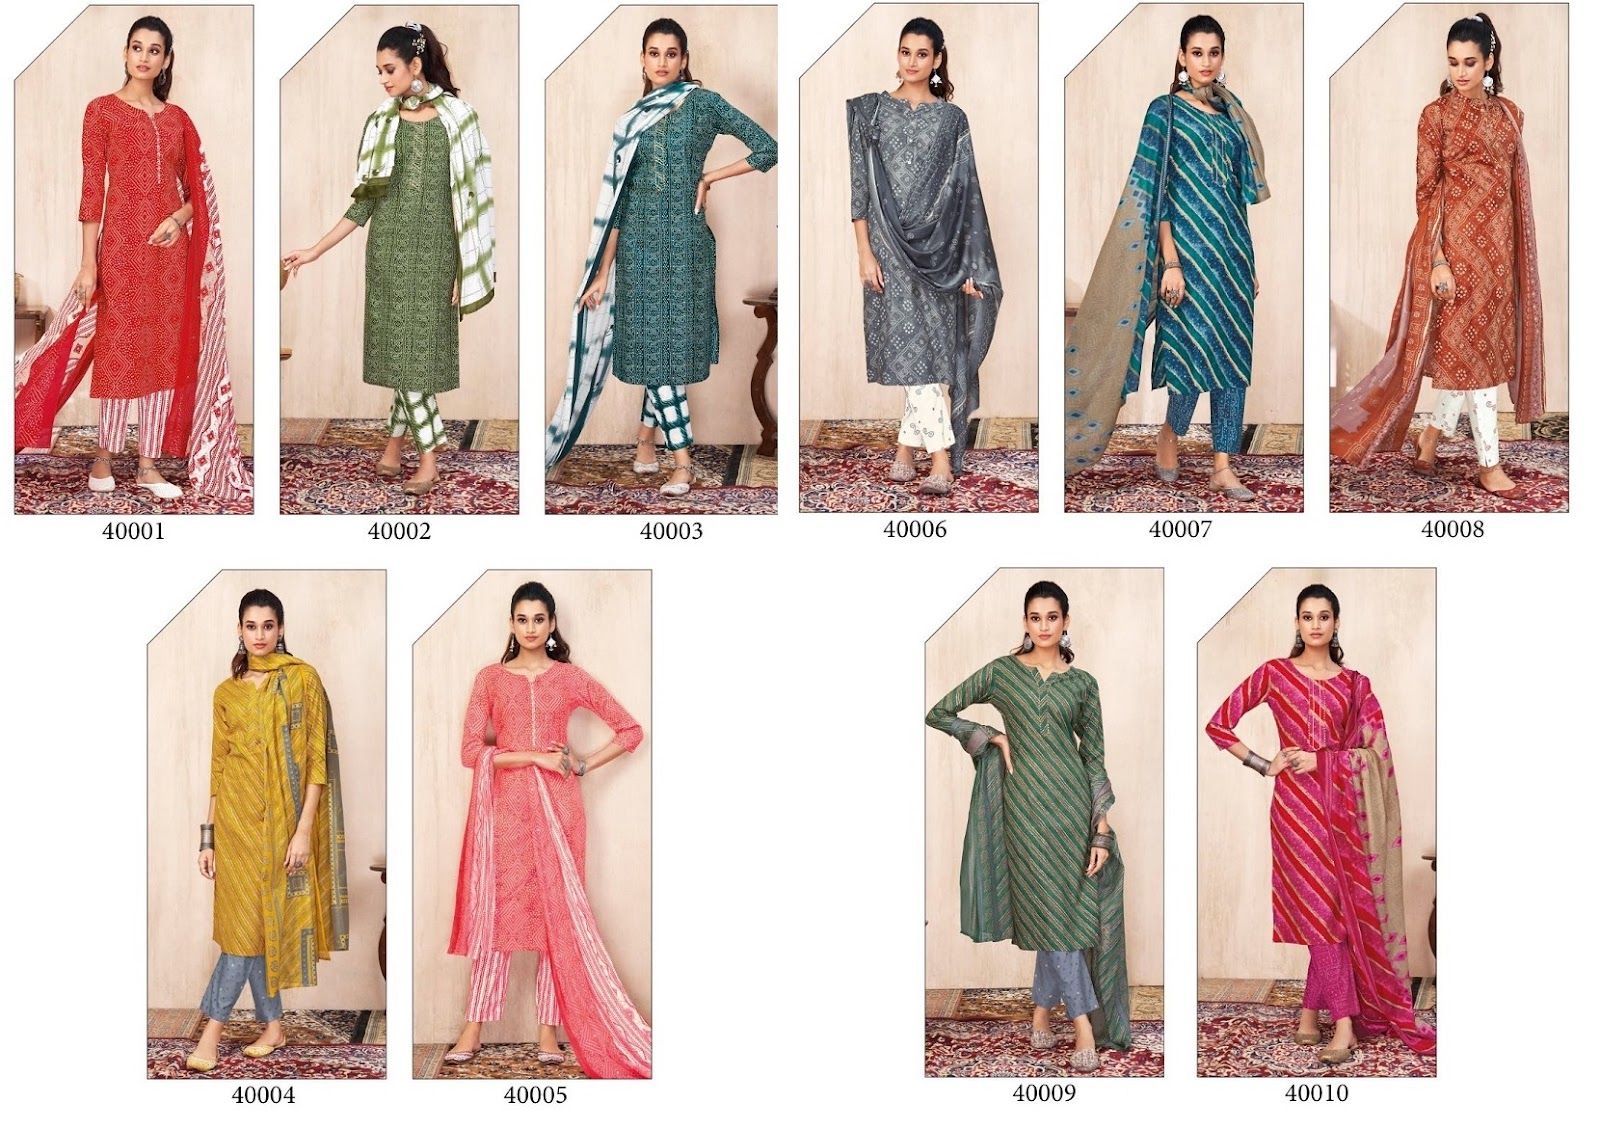 Bandhani Lehariya Special Vol 4 Suryajyoti Readymade Pant Style Suits